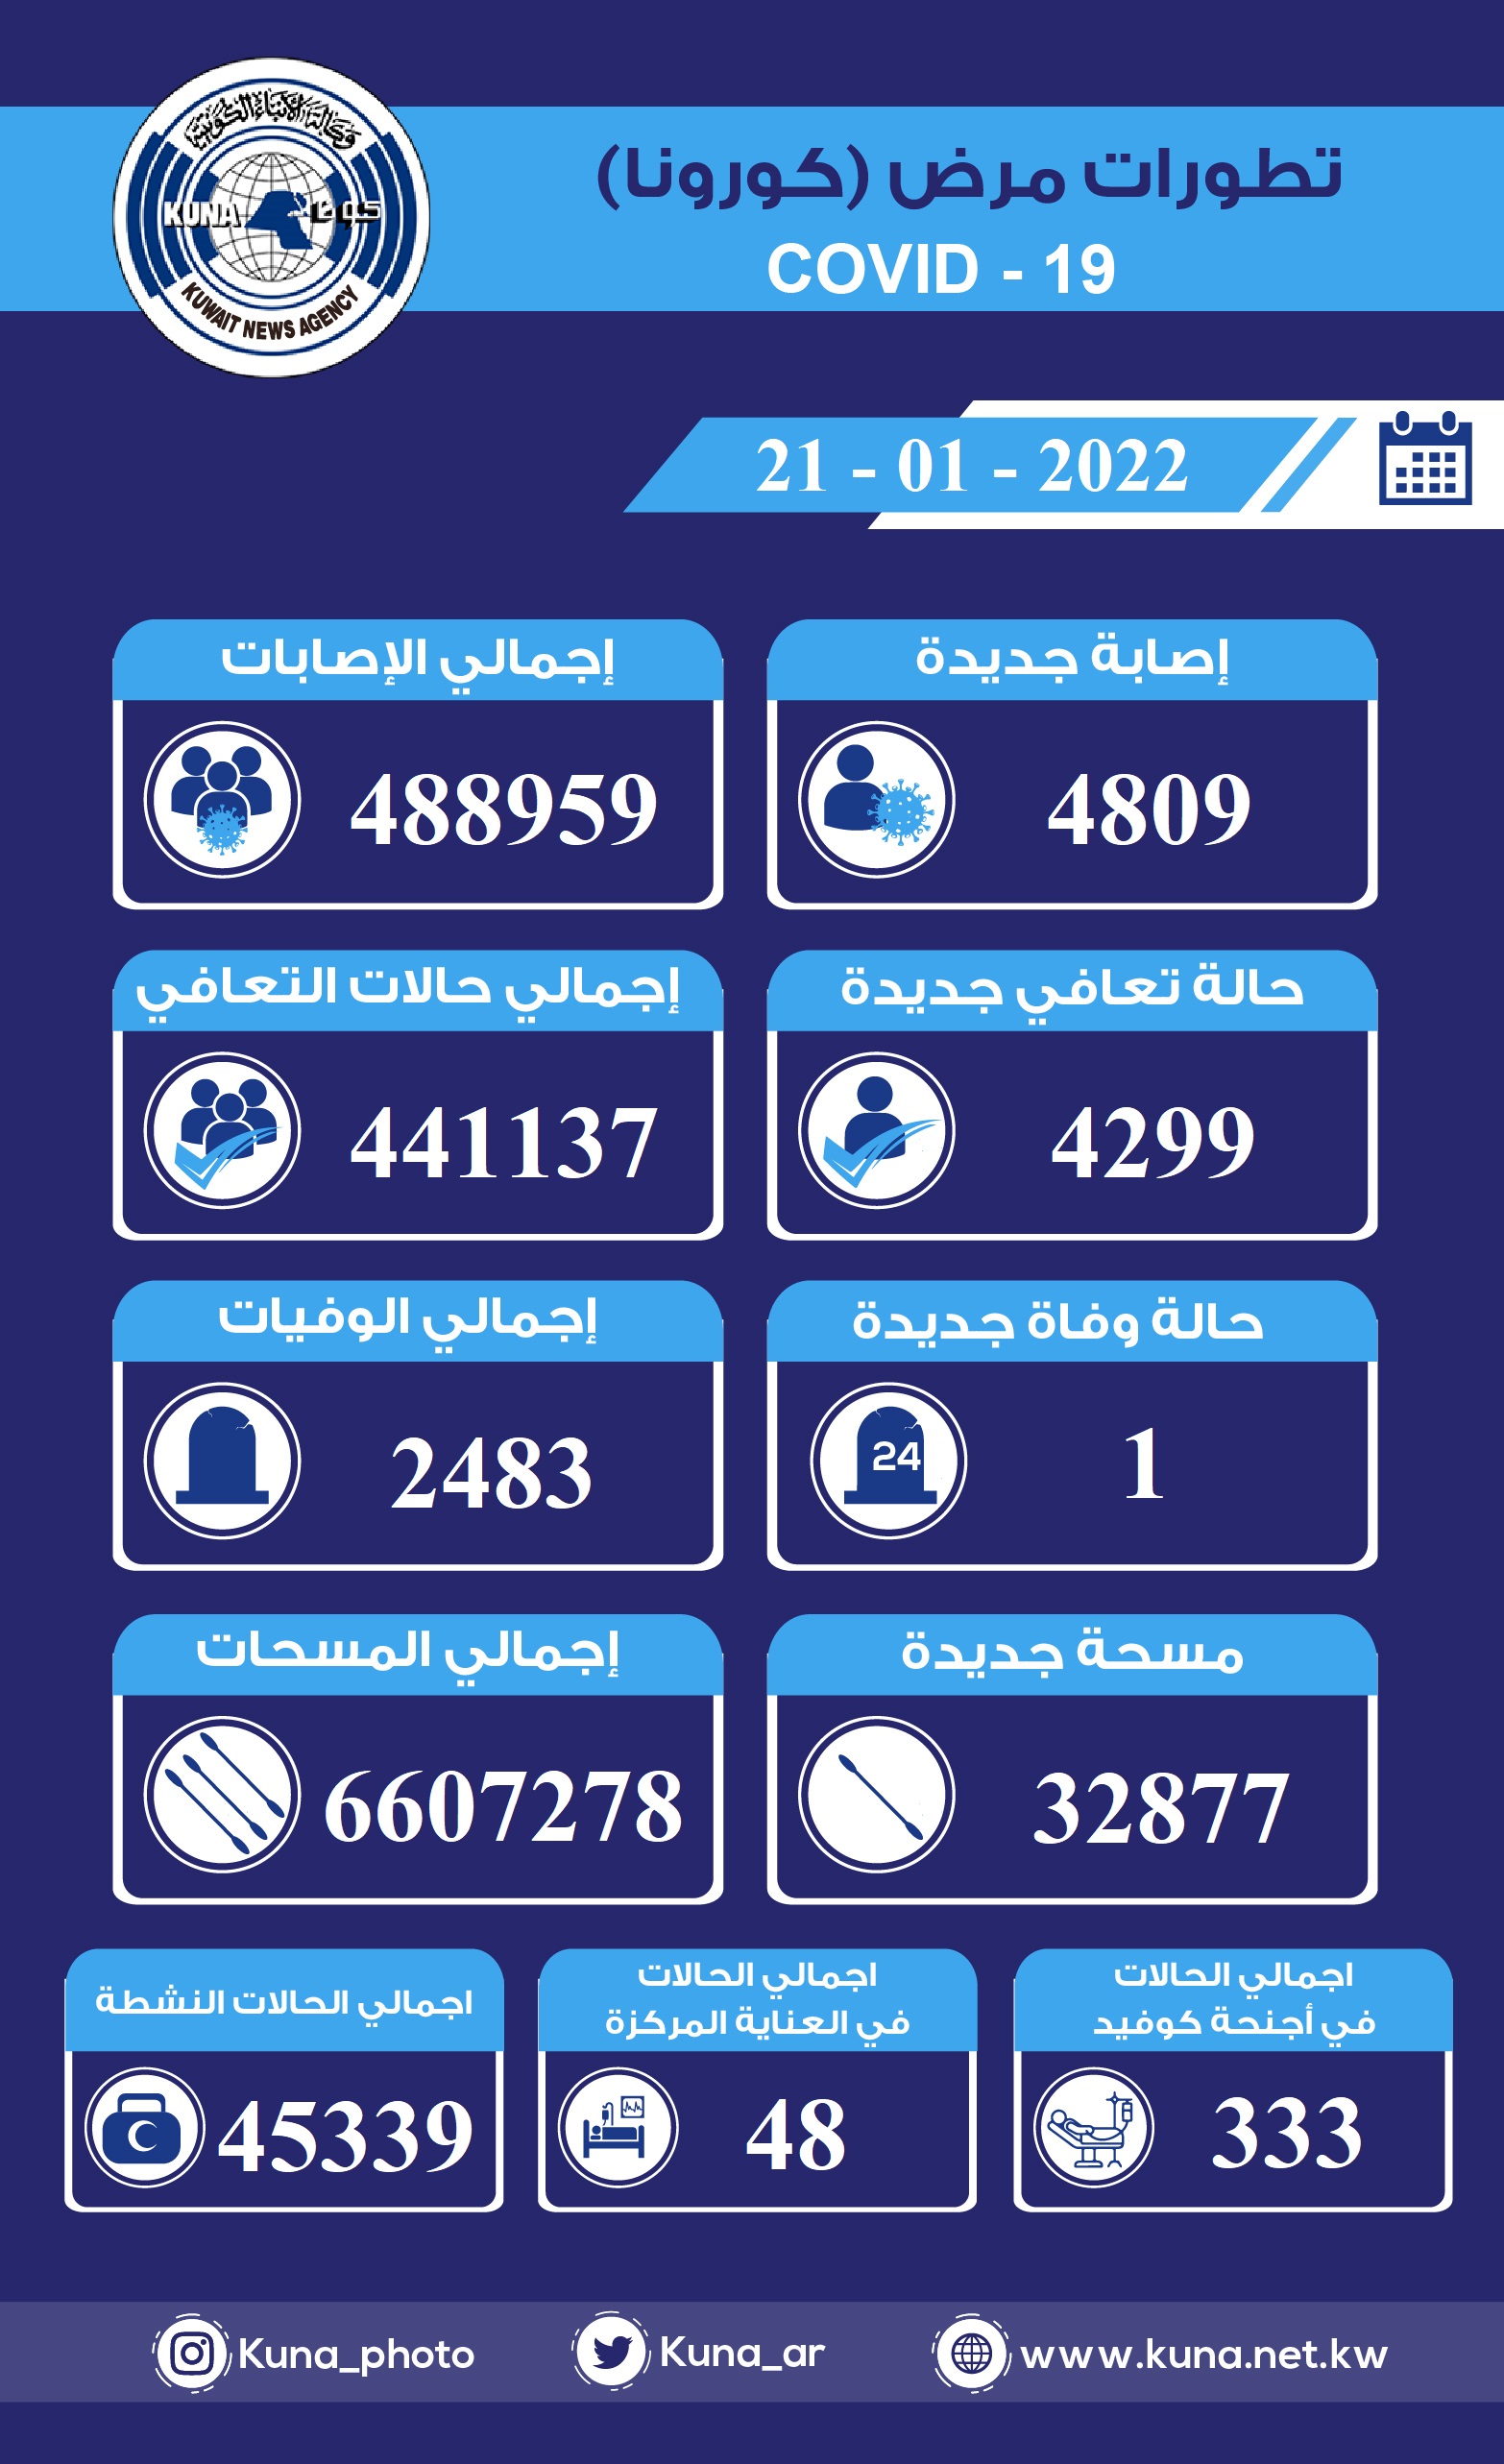 (الصحة) الكويتية: 4809 إصابات جديدة ب(كورونا) وشفاء 4299 وتسجيل حالة وفاة خلال الساعات ال24 الماضية